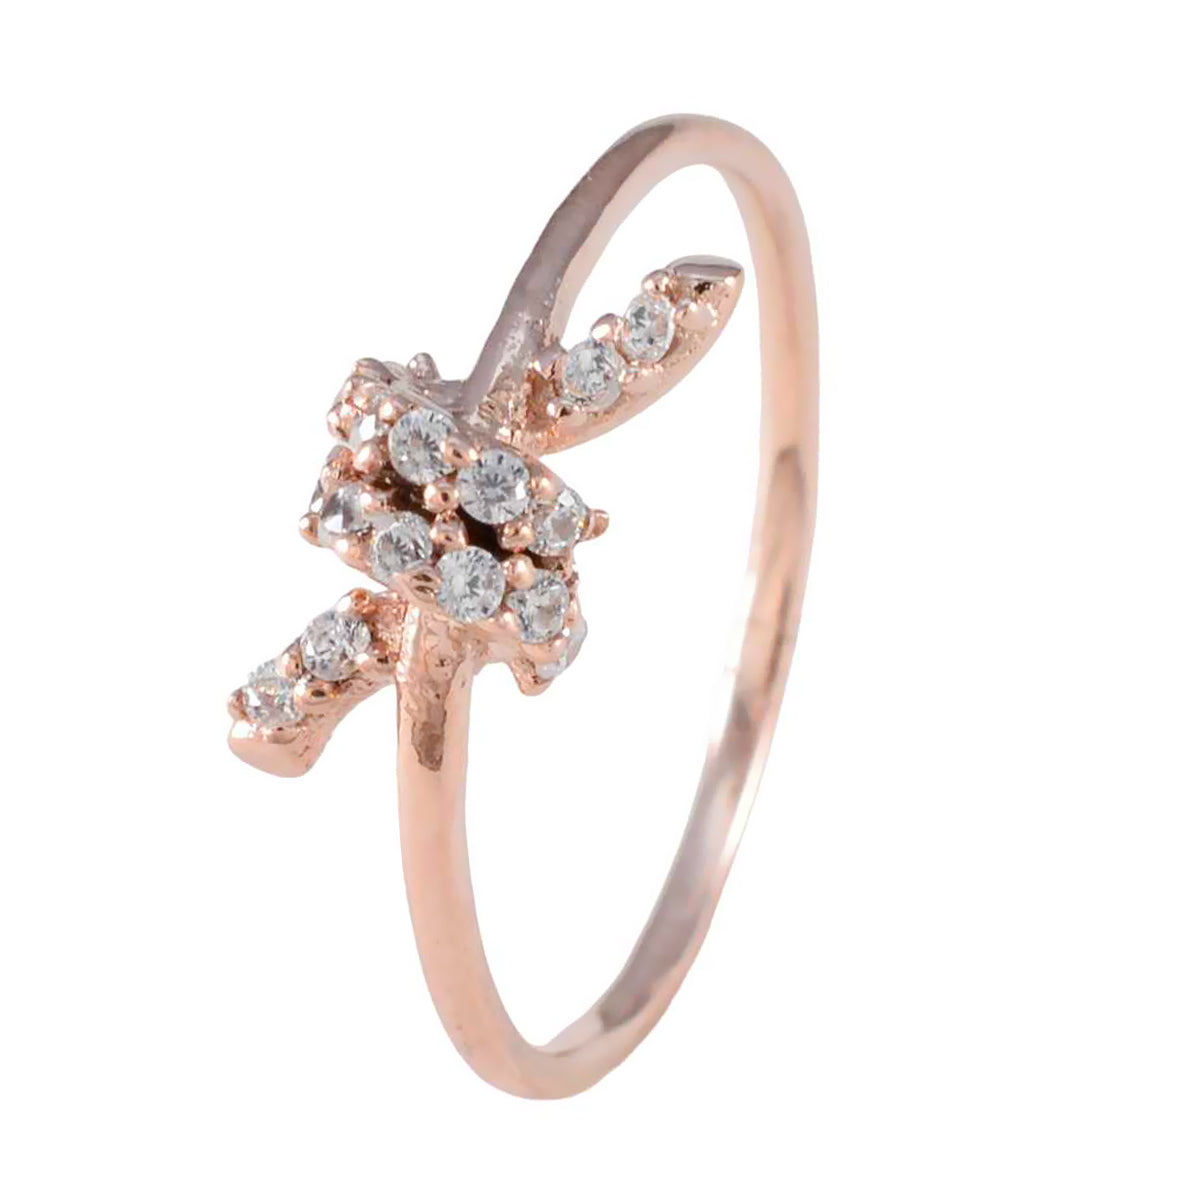 riyo superbo anello in argento con placcatura in oro rosa anello da cocktail con gioielli personalizzati con pietra bianca cz a forma rotonda con montatura a punta